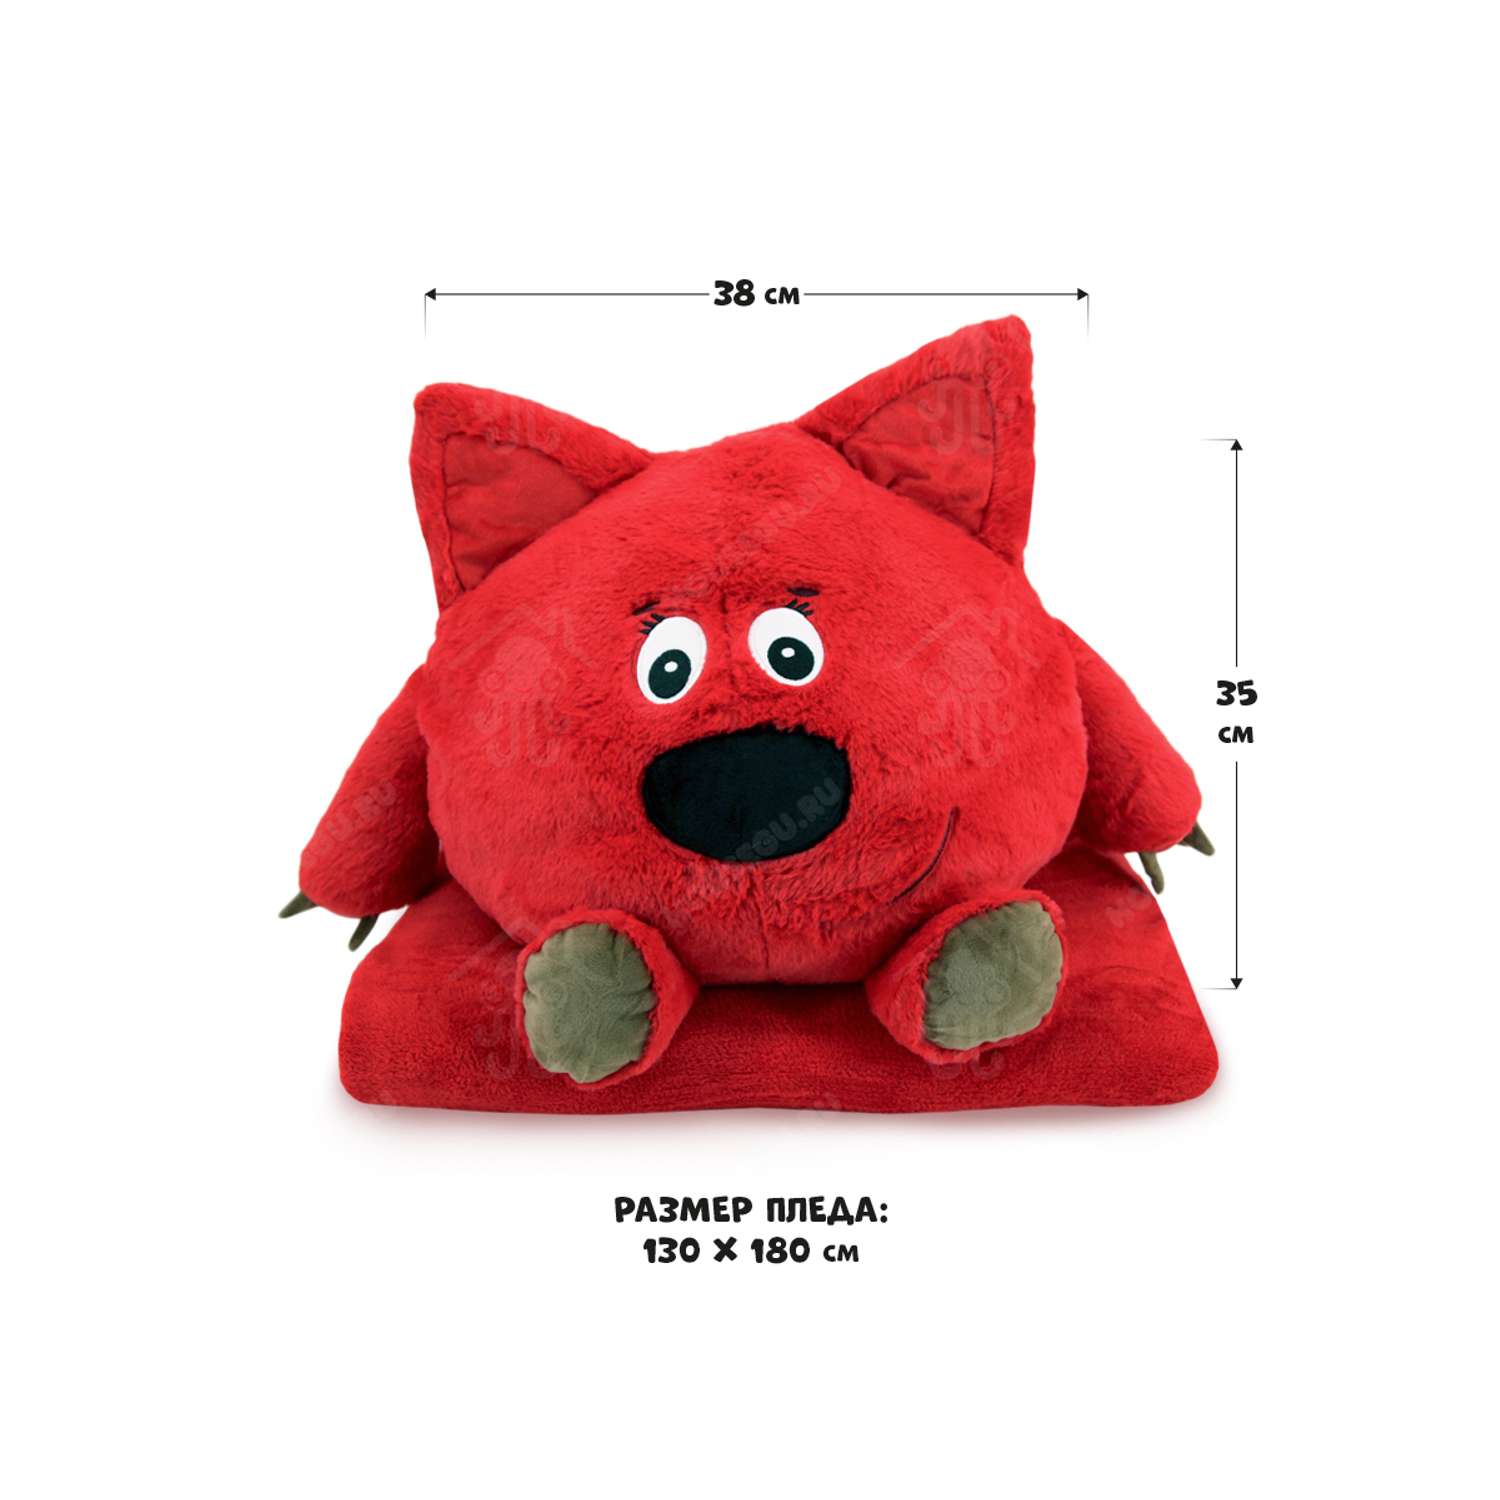 Мимимишки подушка игрушка плед HOUSEGURU красный - фото 5